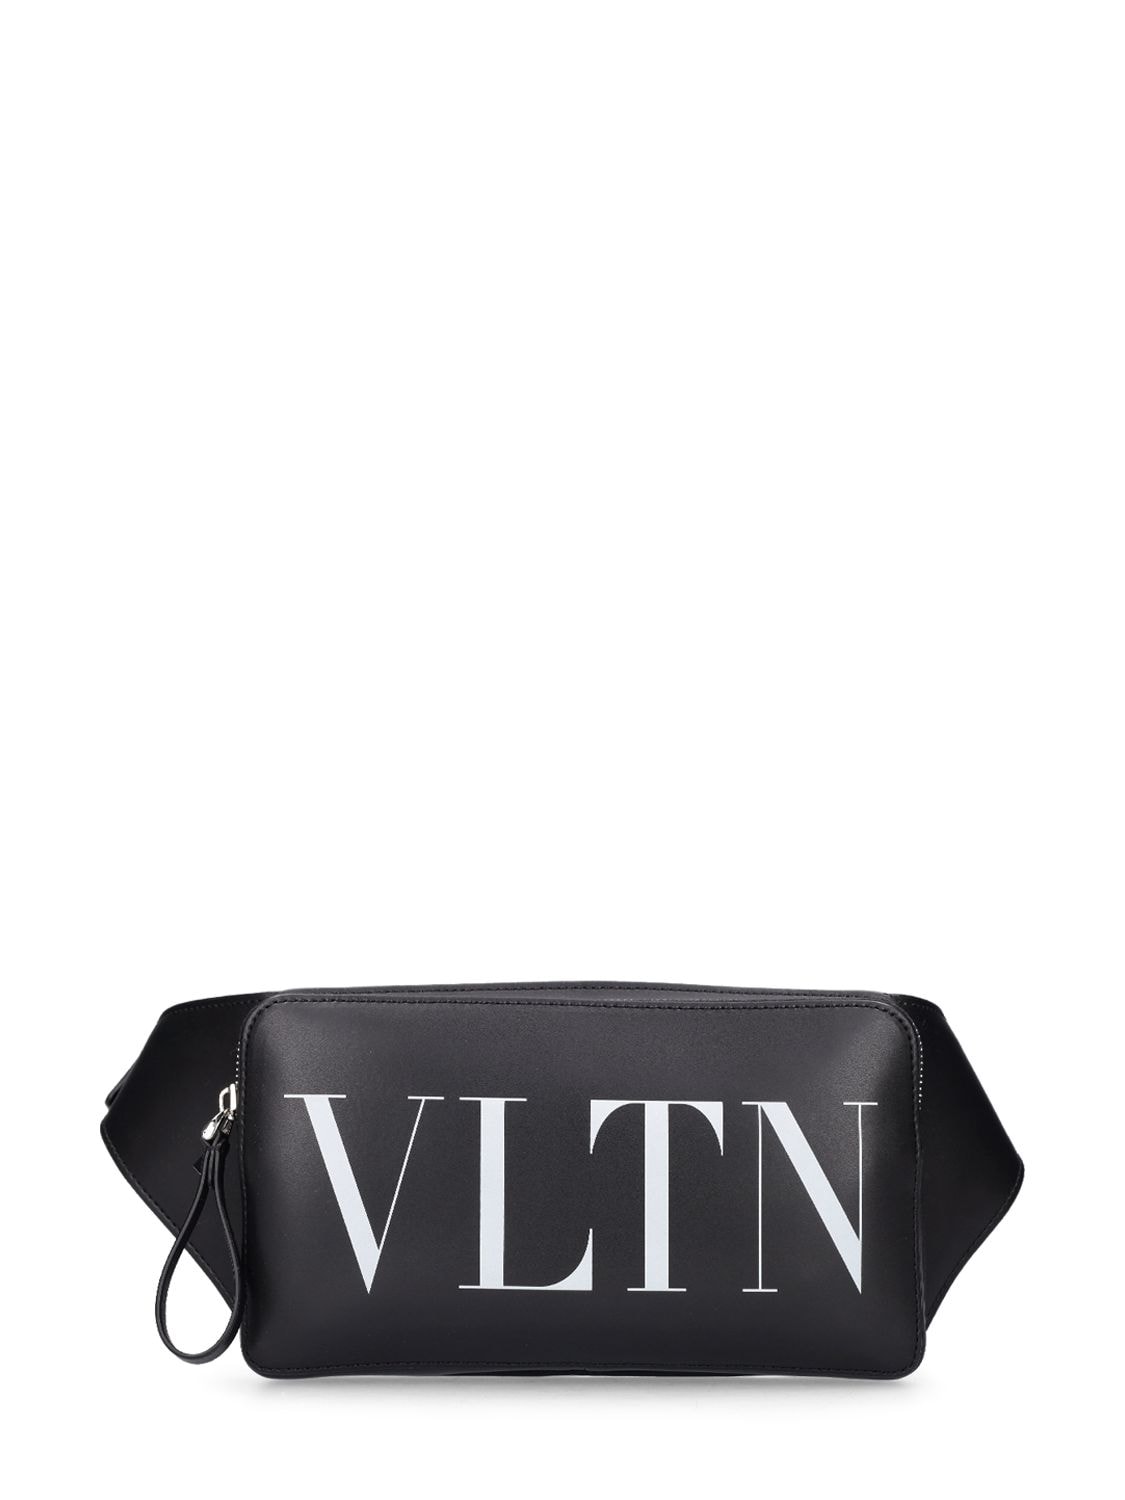 Image of Vltn Leather Belt Bag